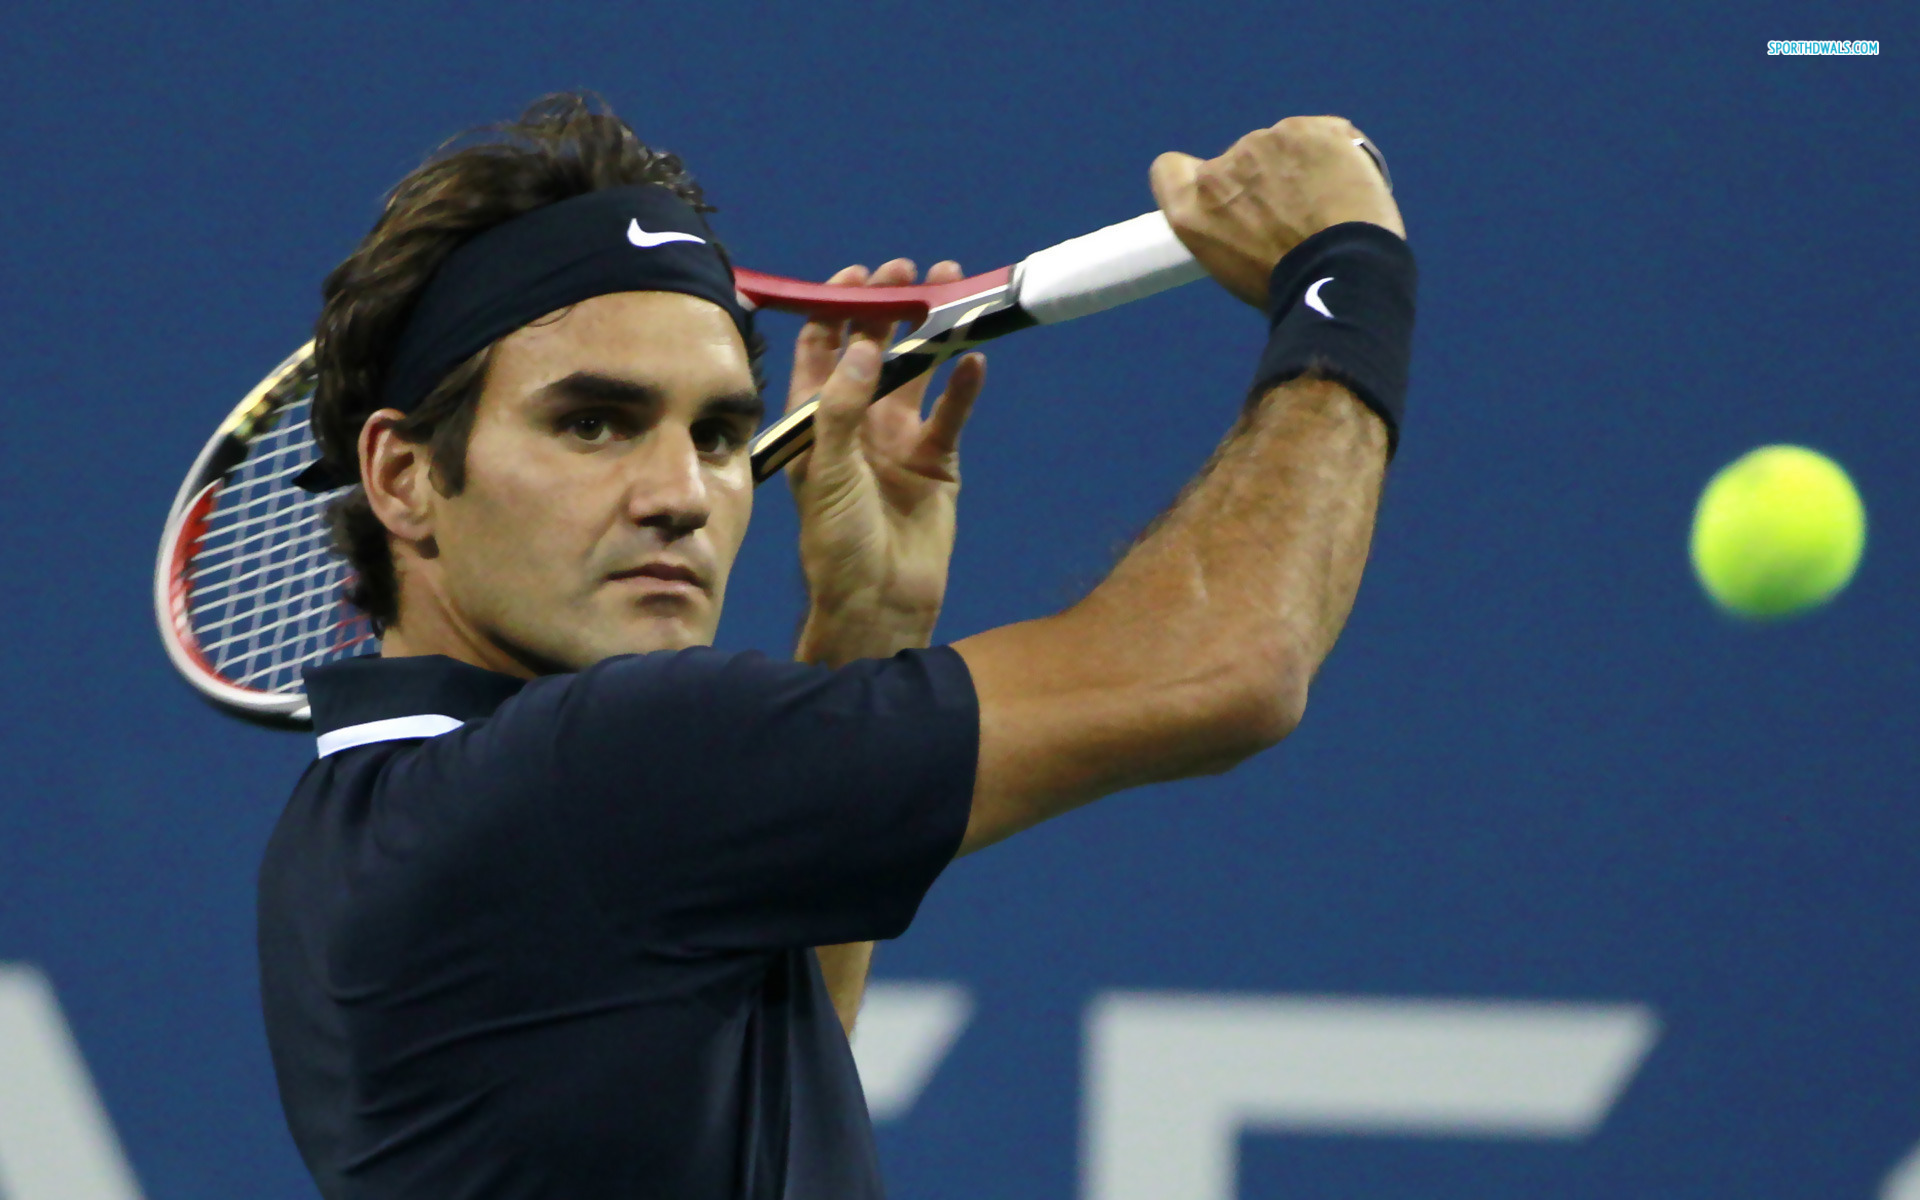 Roger Federer: The King of Tennis